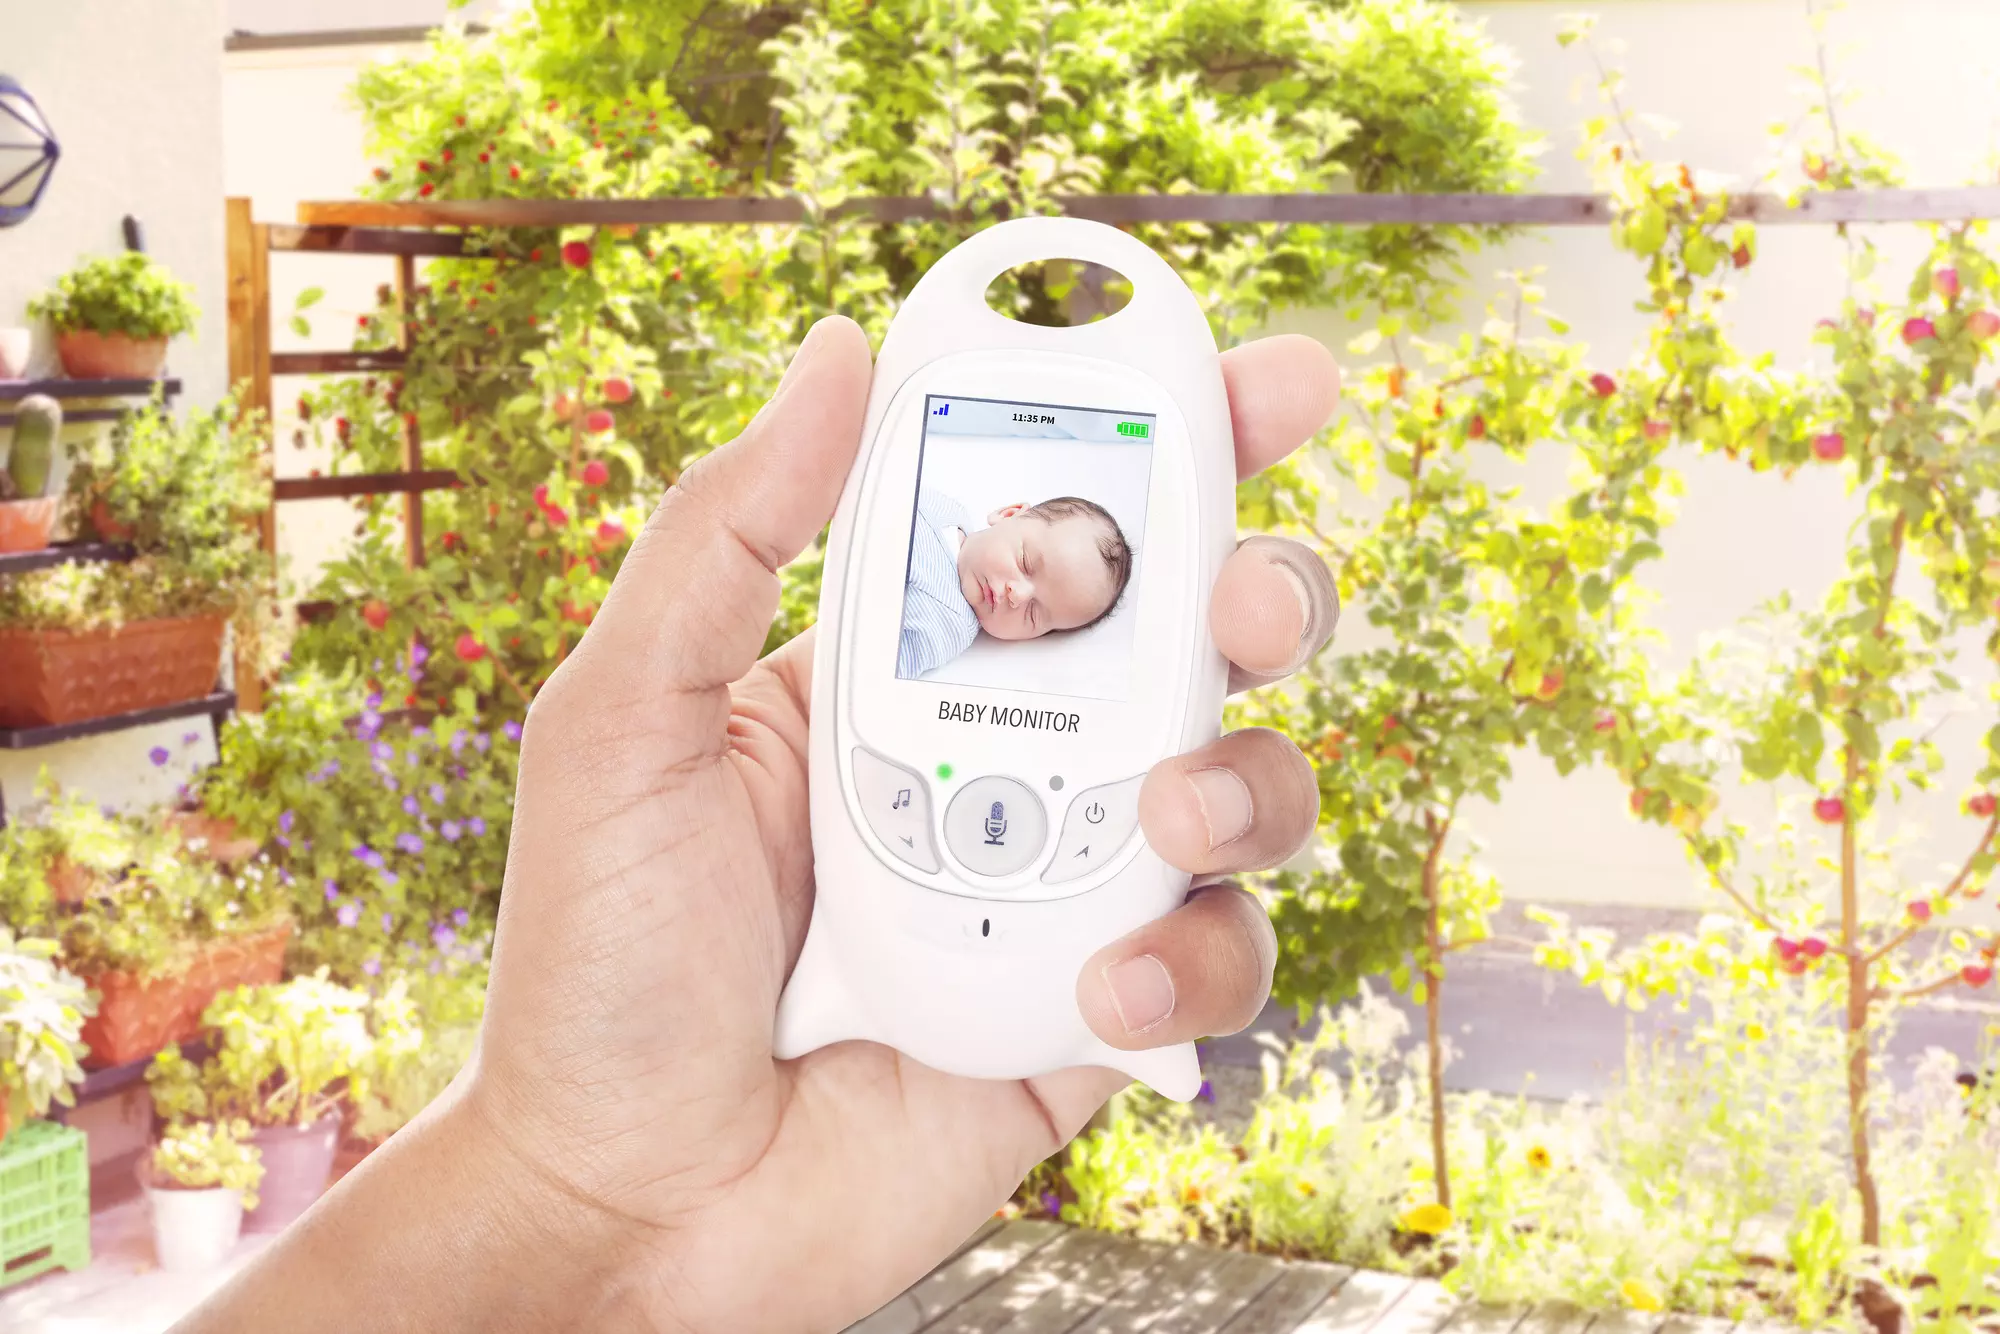 BOIFUN Babyphone Vidéo, Baby Caméra Surveillance Numérique sans Fil  Température